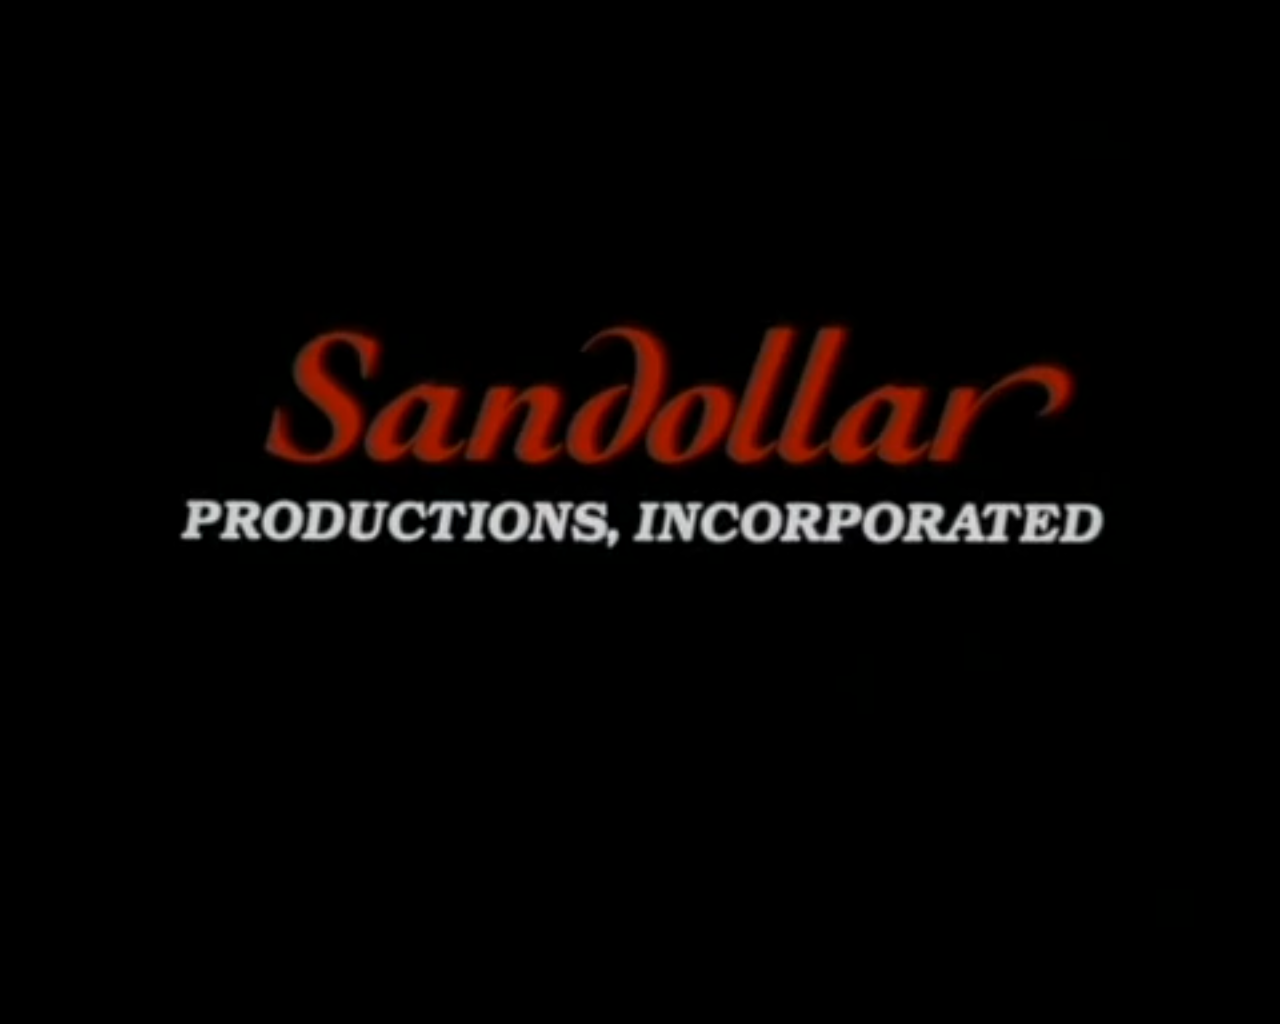 Sandollar (1986)